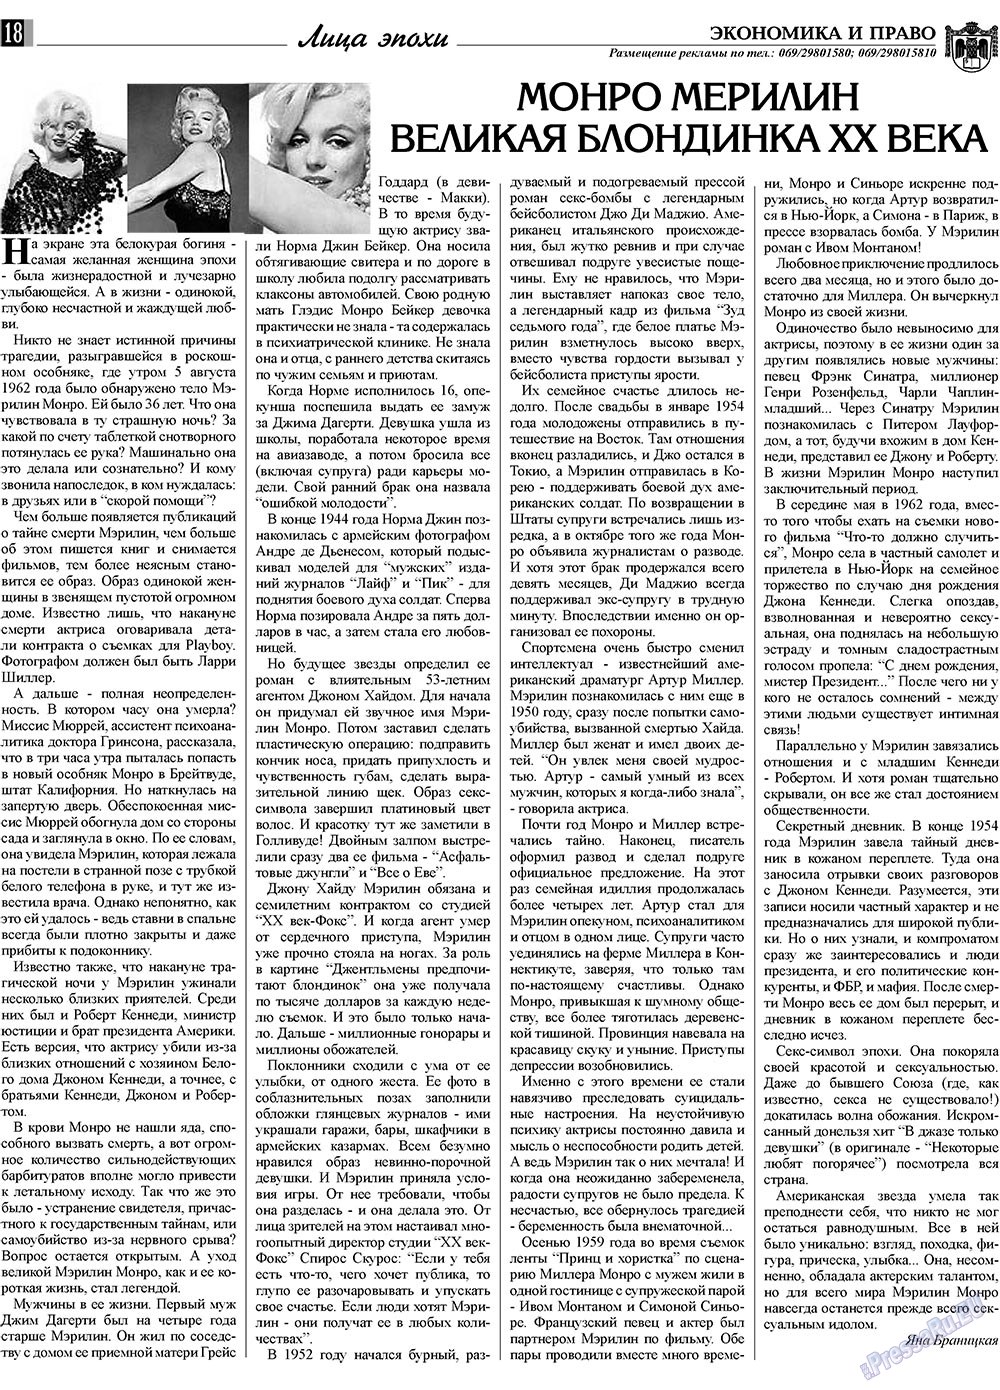 Экономика и право, газета. 2009 №7 стр.18